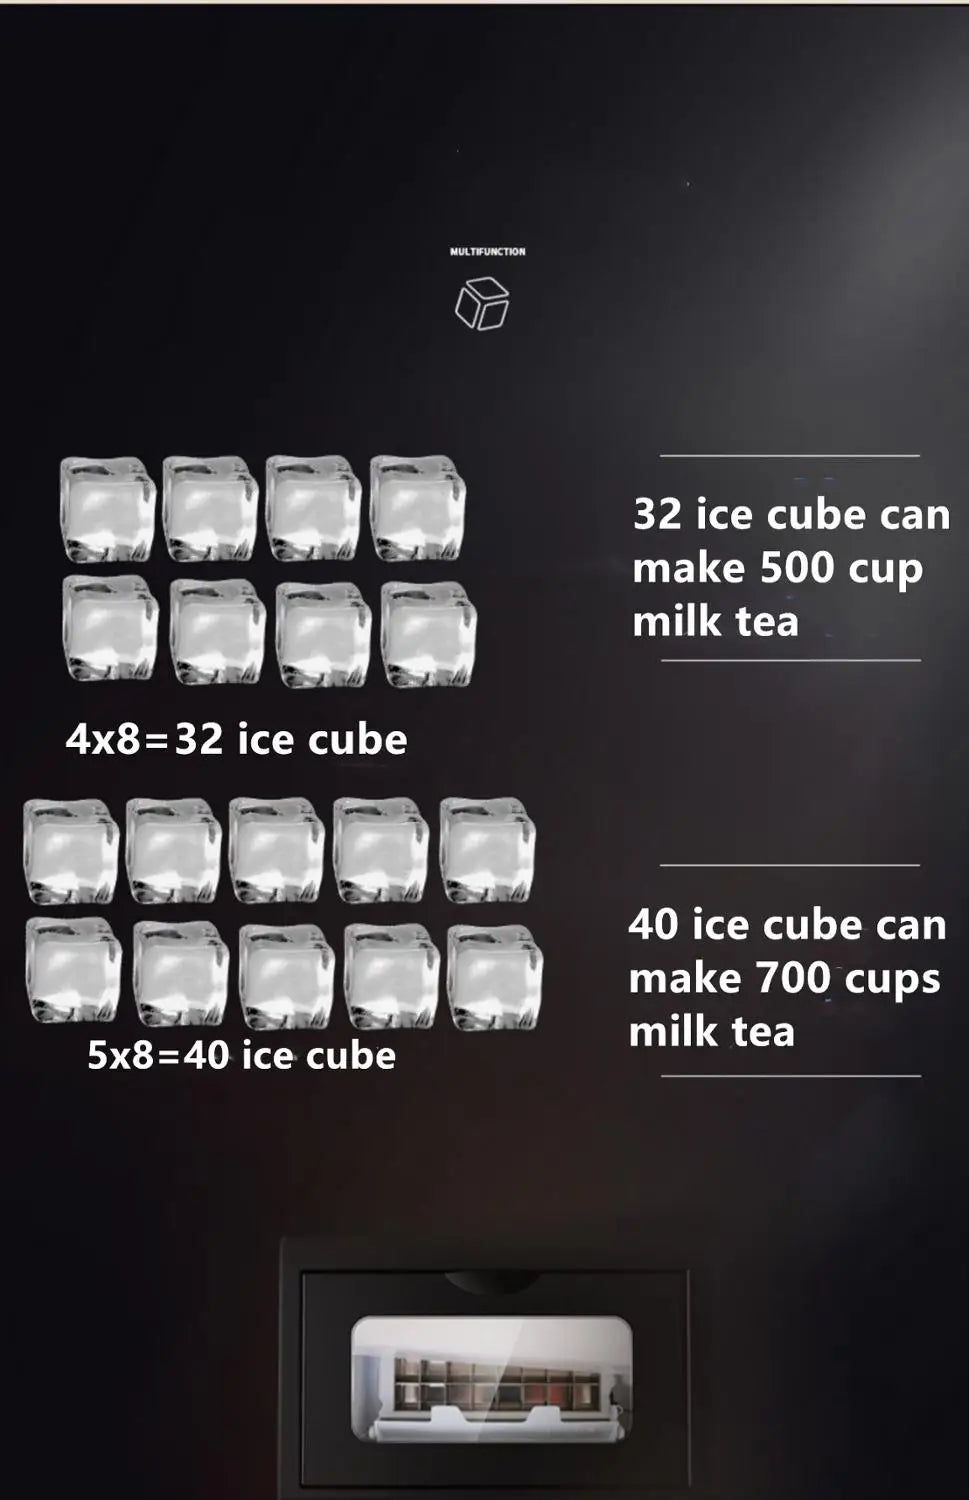 HICON 50KG 68KG ice machine commercial milk tea shop  bar automatic cube ice maker ice cube machine Машина, которая делает лед